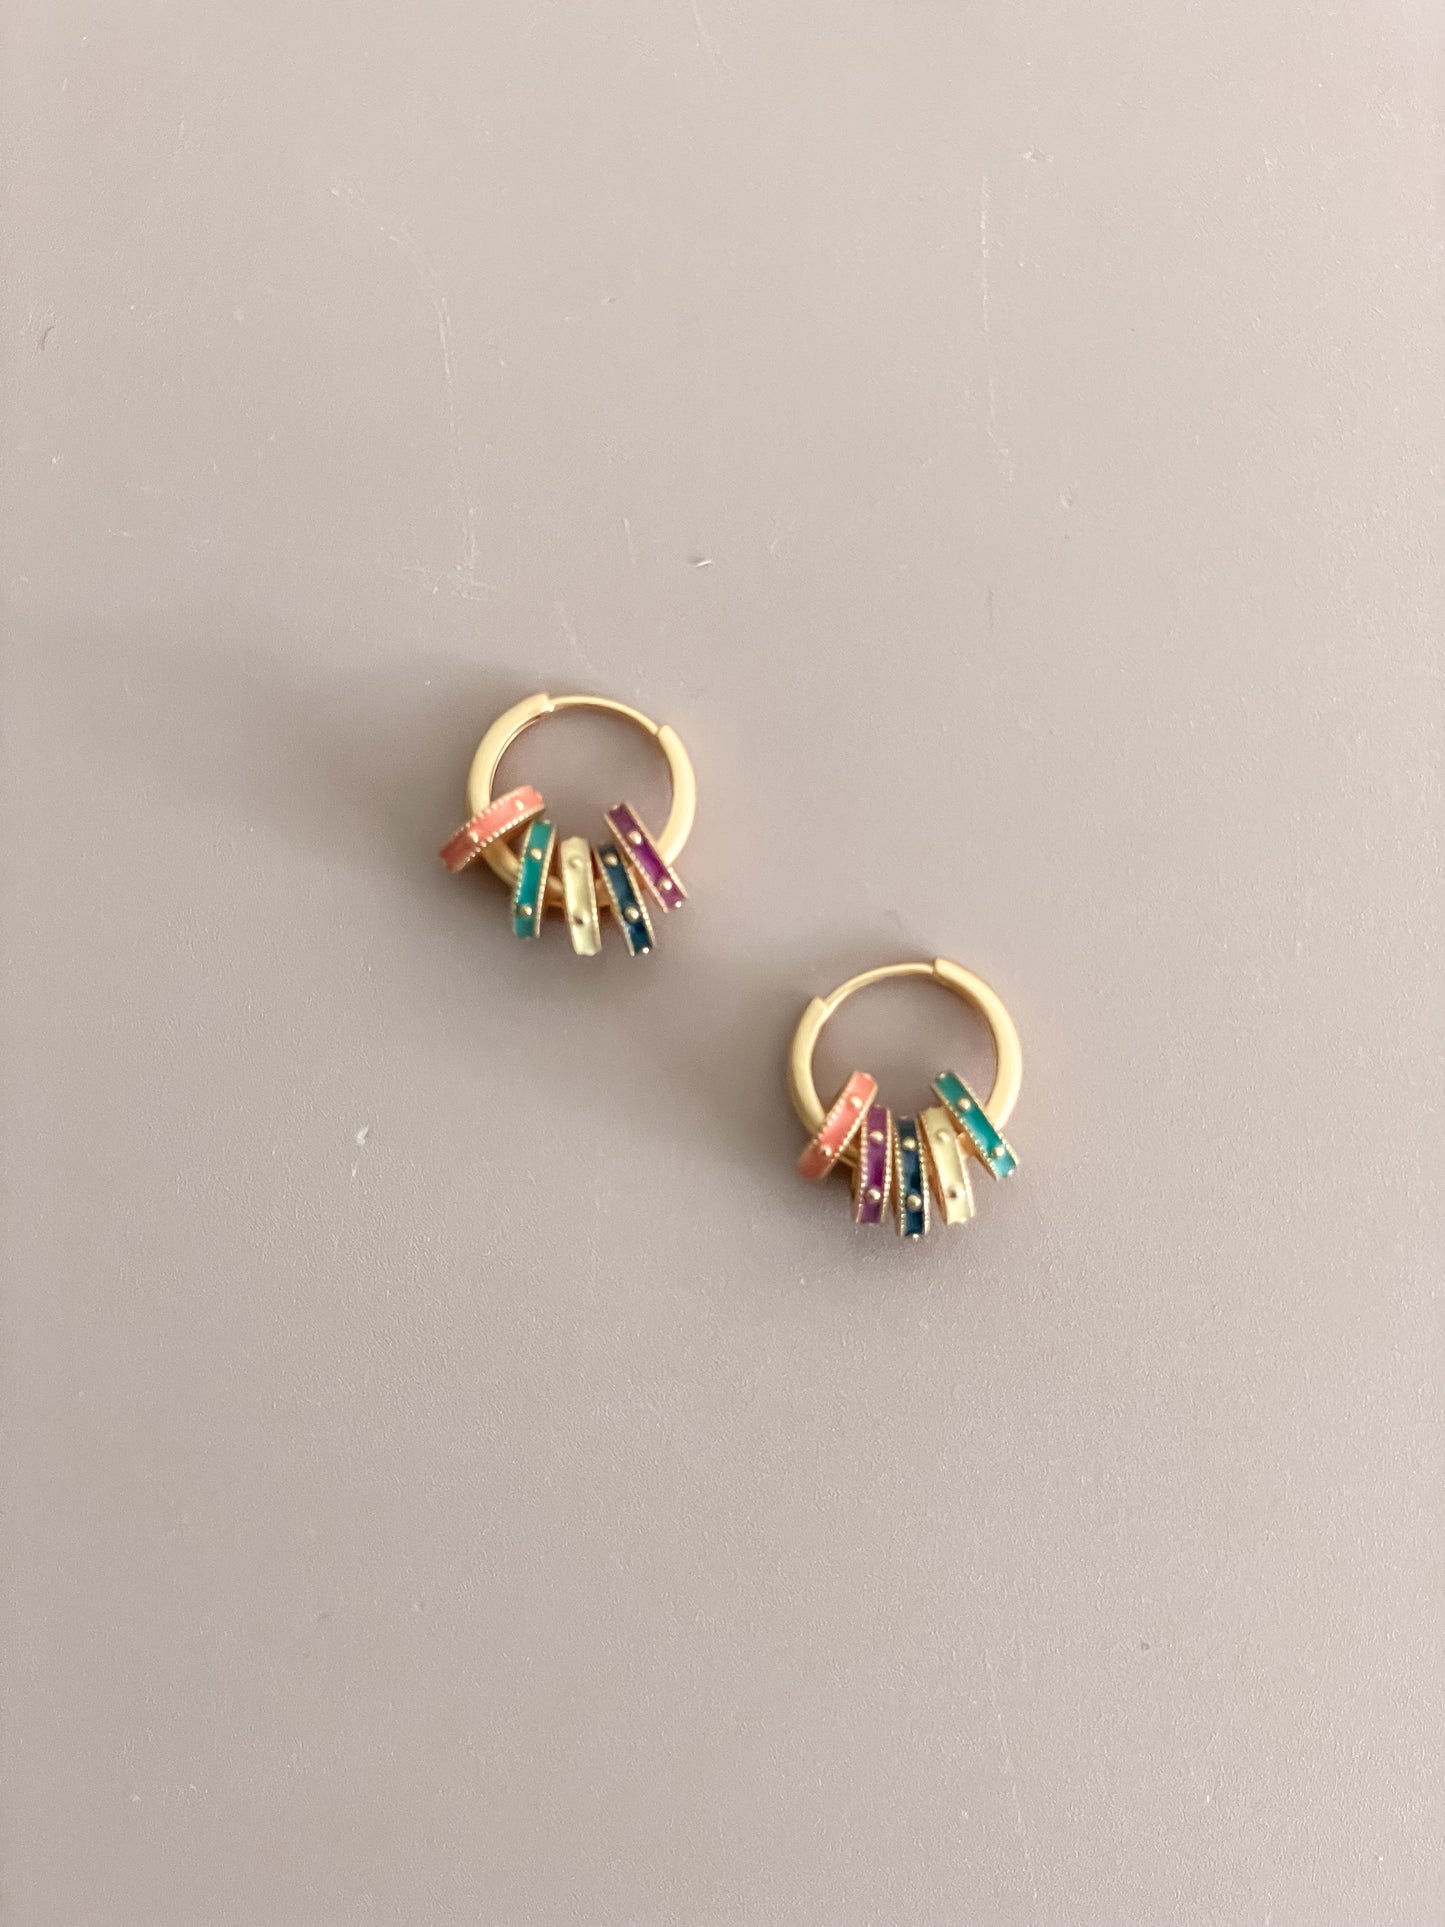 Colorful Enamel Ring Earrings